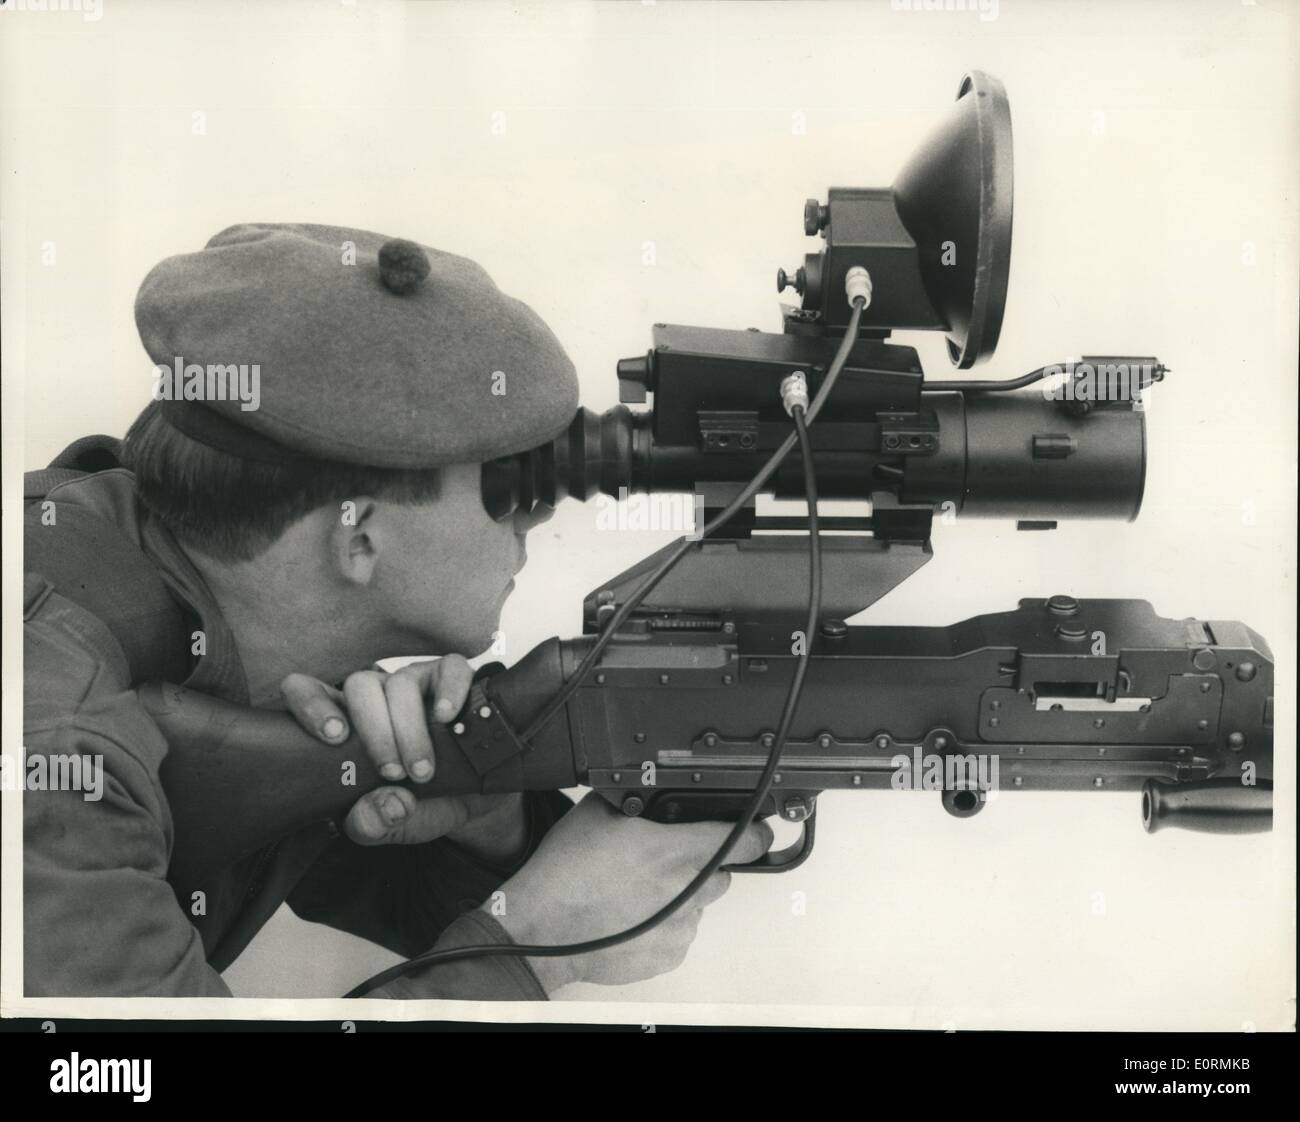 1. Januar 1960 - Infrarot-Sehenswürdigkeiten für die Armee selbst Laden Gewehre: viele neue automatische Geräte sind von der britischen Armee der Zukunft inkl. Infrarot-Waffe Sehenswürdigkeiten verwendet werden, die einen Mann sein Ziel in der Wark 150 Yards entfernt treffen können - selbst - angetrieben Kanonen, die schwimmen können, Flüsse und Roboter Spione in Form von 13 1/2 Fuß lange stubby geflügelten Drohnen, die bei Tag oder bei Nacht fotografieren kannst. Es trägt noch oder live-Kameras Stockfoto